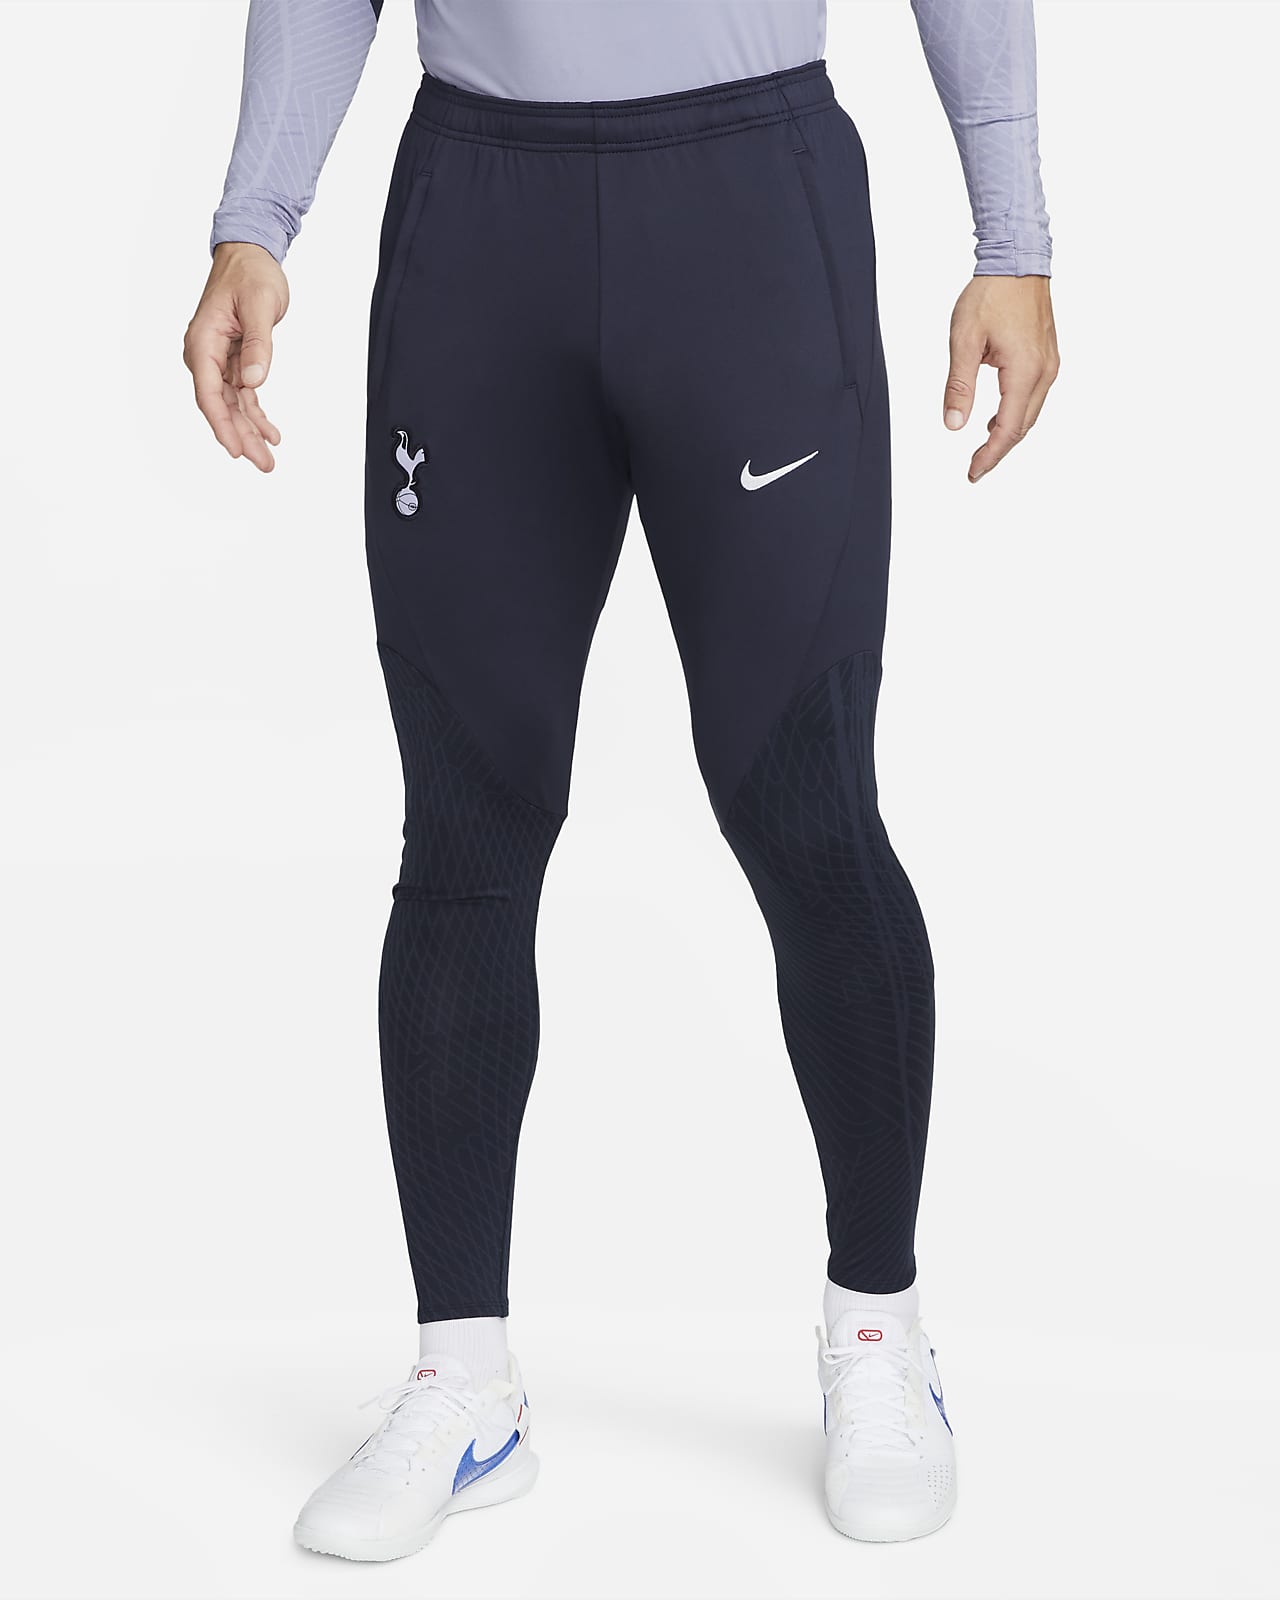 Tottenham Hotspur Strike Nike Dri-FIT kötött férfi futballnadrág